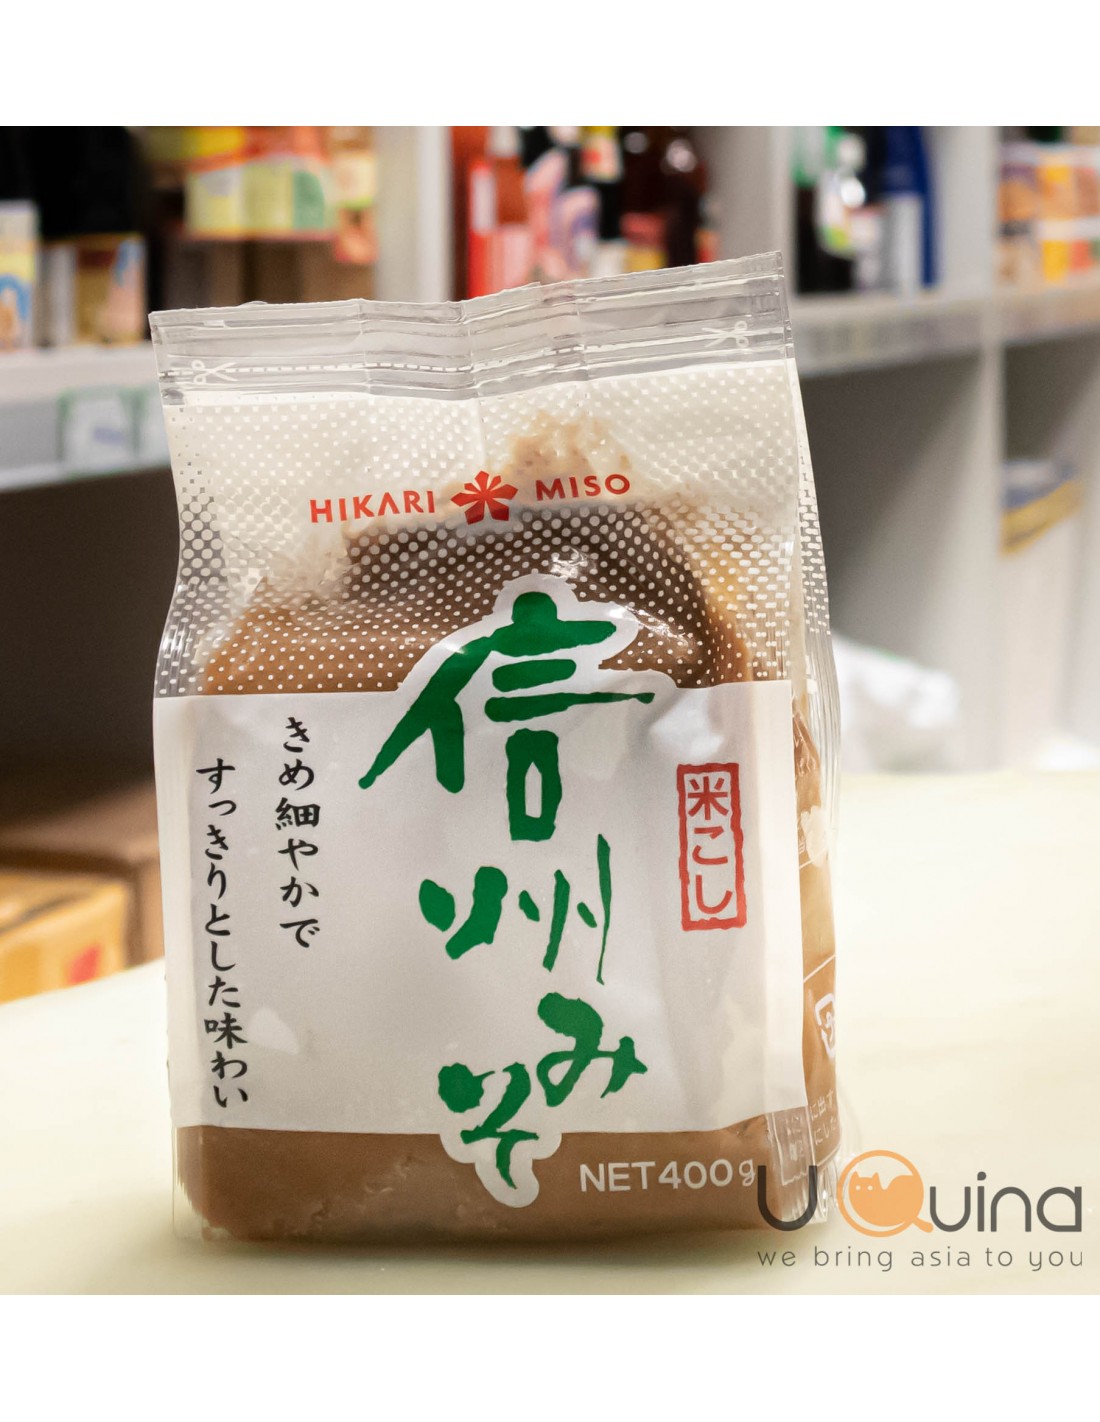 Hikari White Miso Soybean Paste - EURO USA